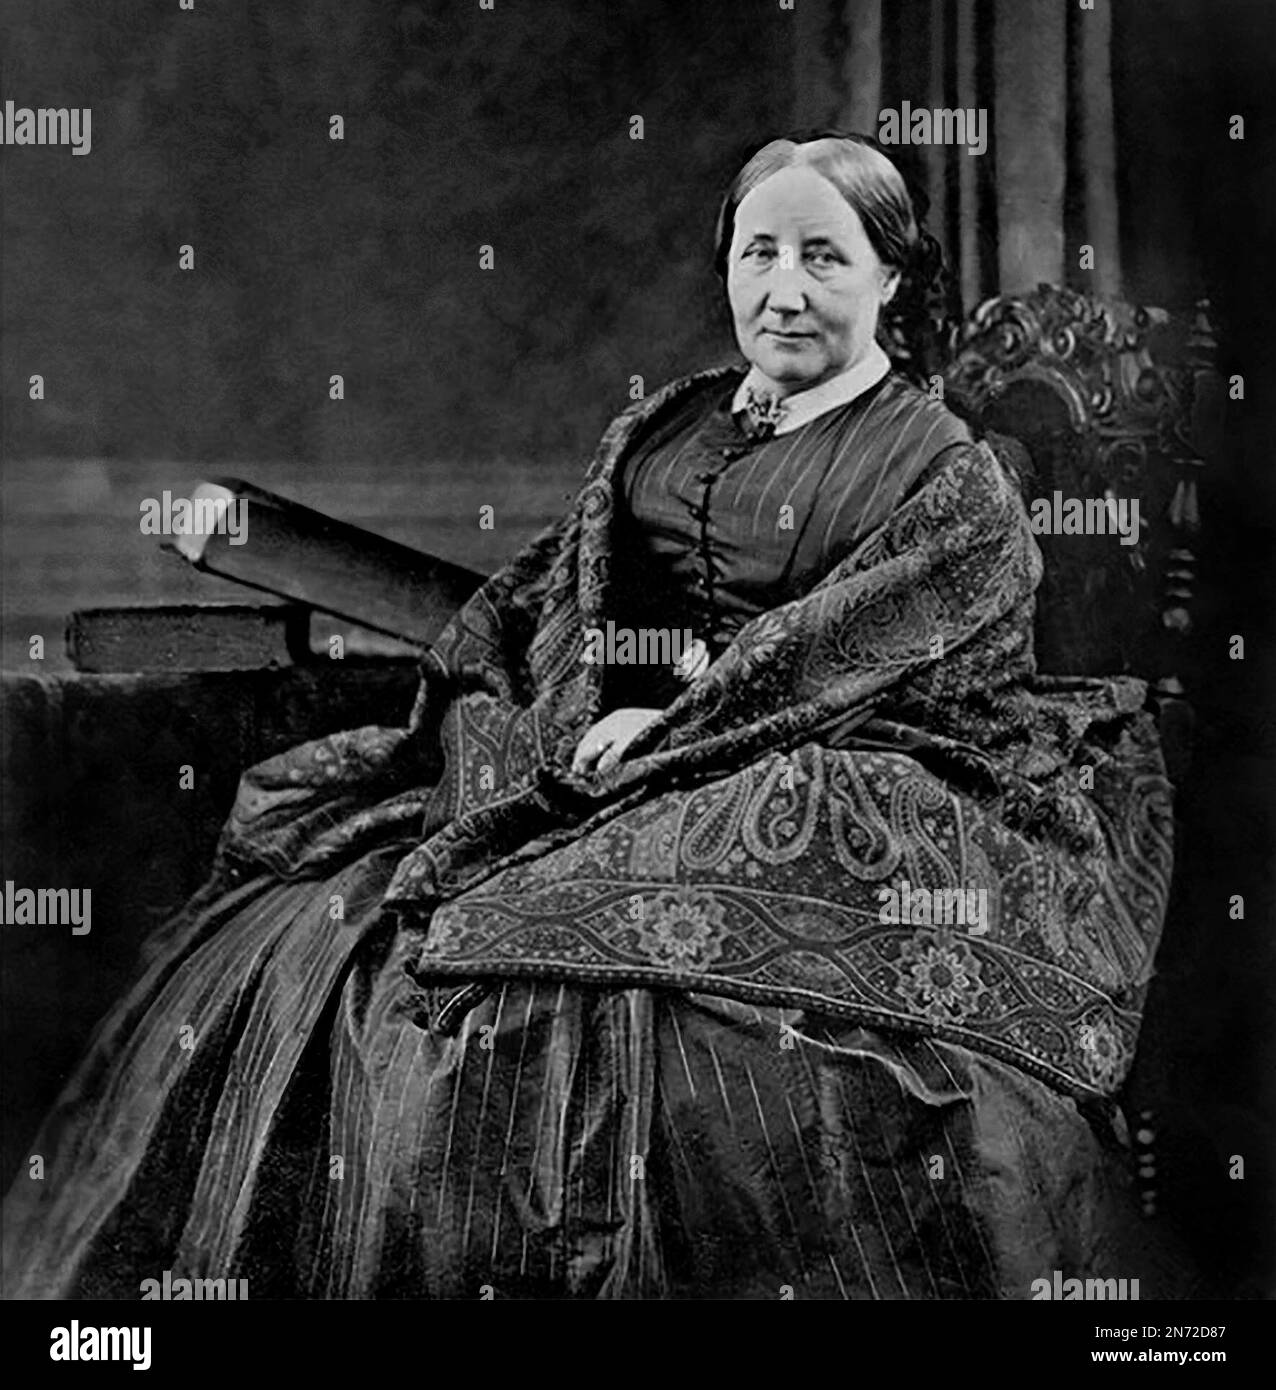 Elizabeth Cleghorn Gaskell, (geborene Stevenson; 1810-1865), c. 1860. Elizabeth Gaskell, oft als Mrs. Gaskell bezeichnet, war während der viktorianischen Ära eine englische Schriftstellerin und Kurzgeschichtenautorin. Stockfoto